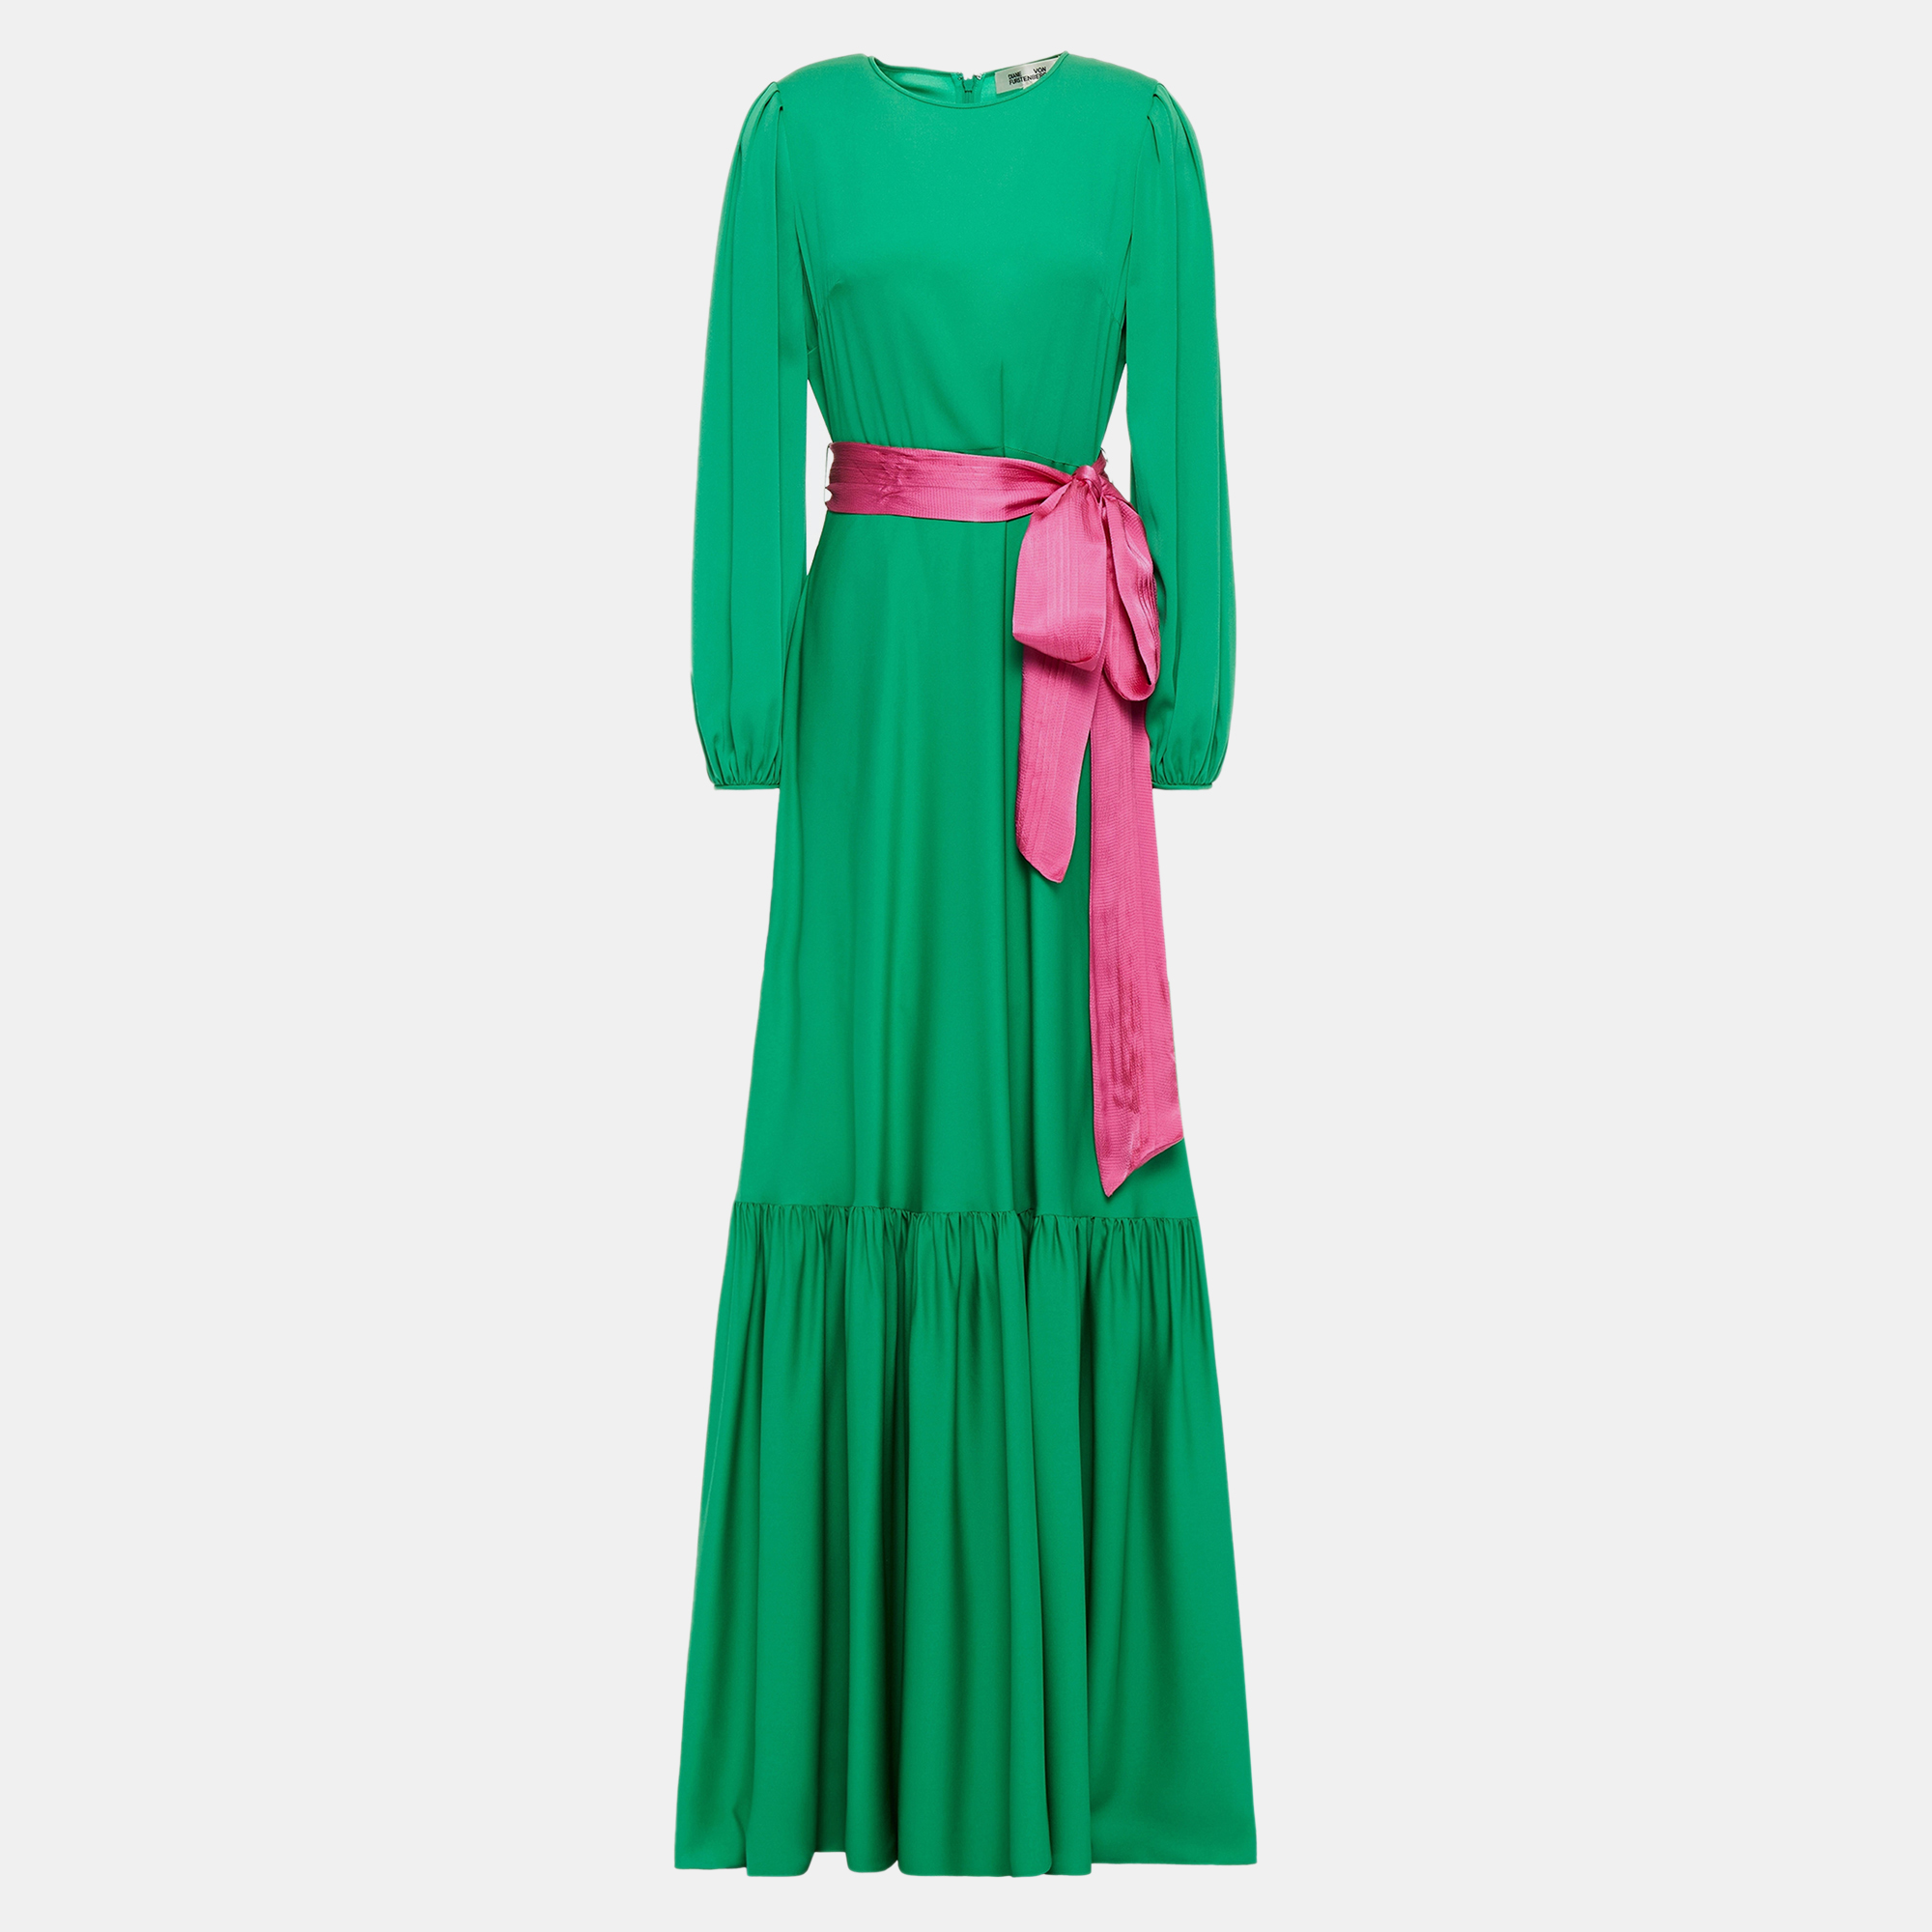 Diane von furstenberg green/pink silk maxi dress size 12